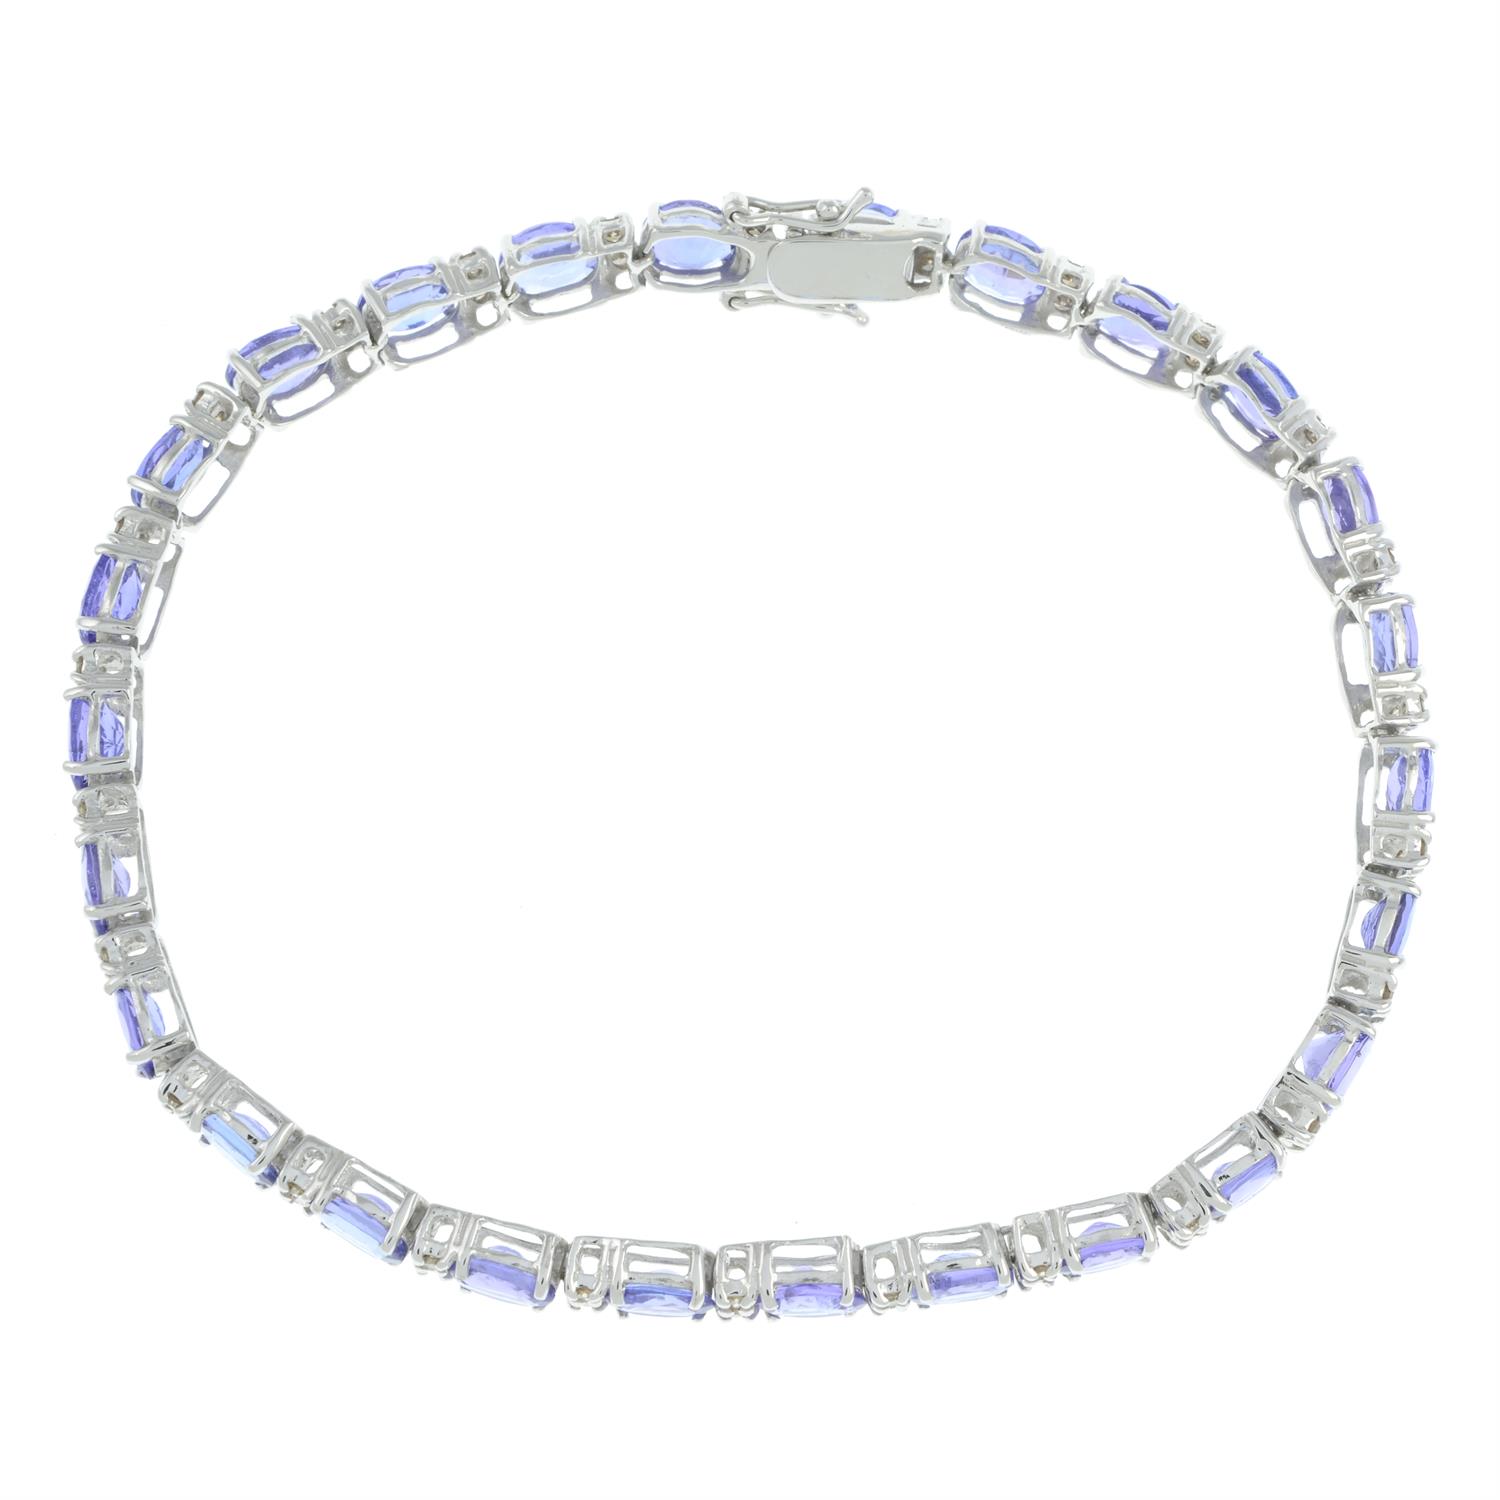 Tanzanite and diamond bracelet - Image 3 of 4